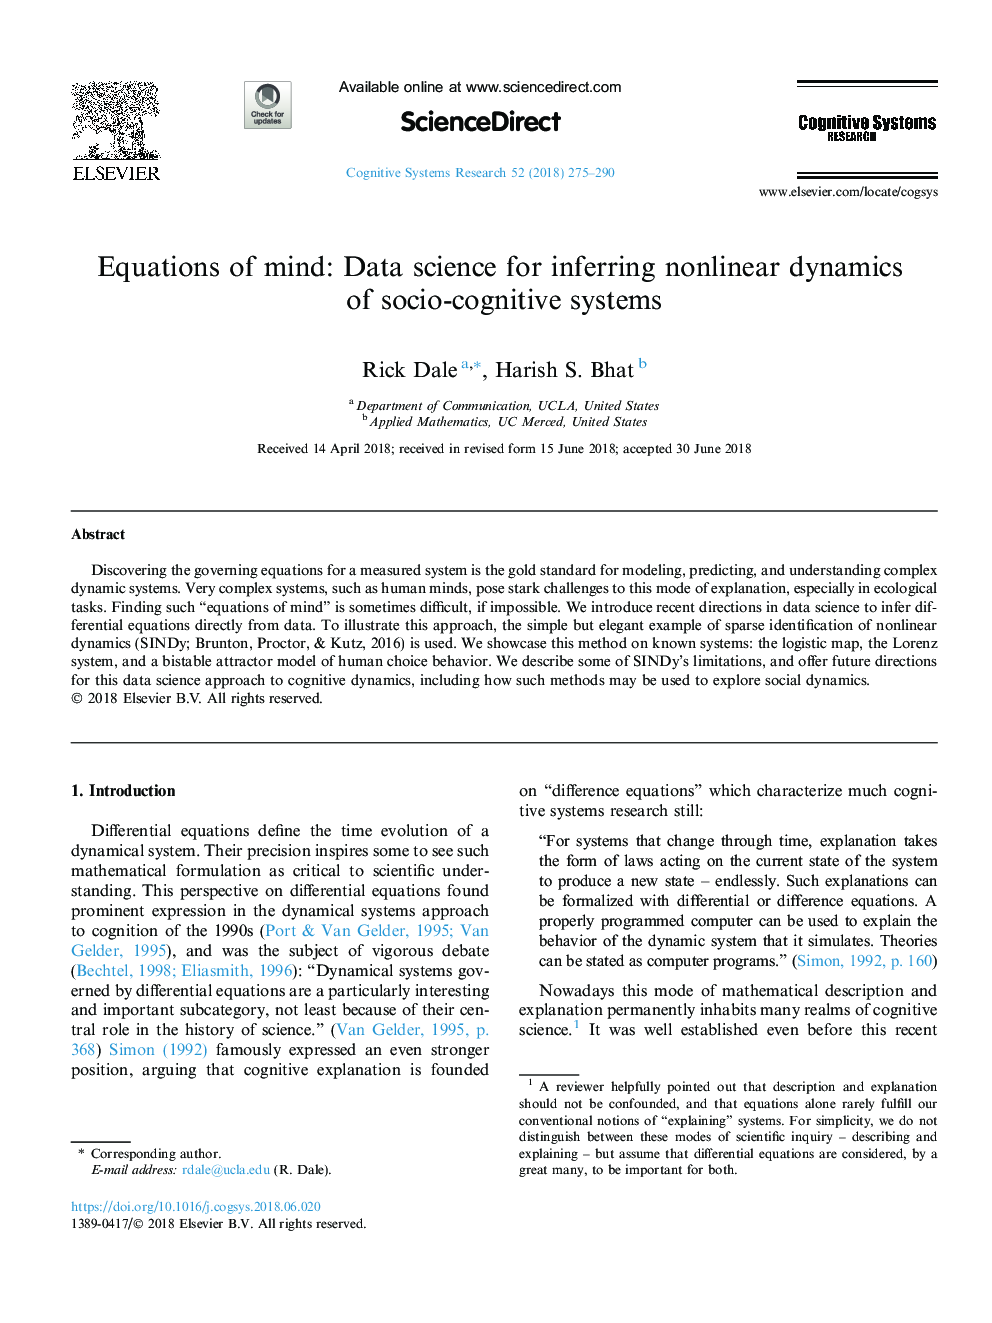 معادلات ذهن: علم داده برای به دست آوردن پویایی غیر خطی سیستم های اجتماعی-شناختی 